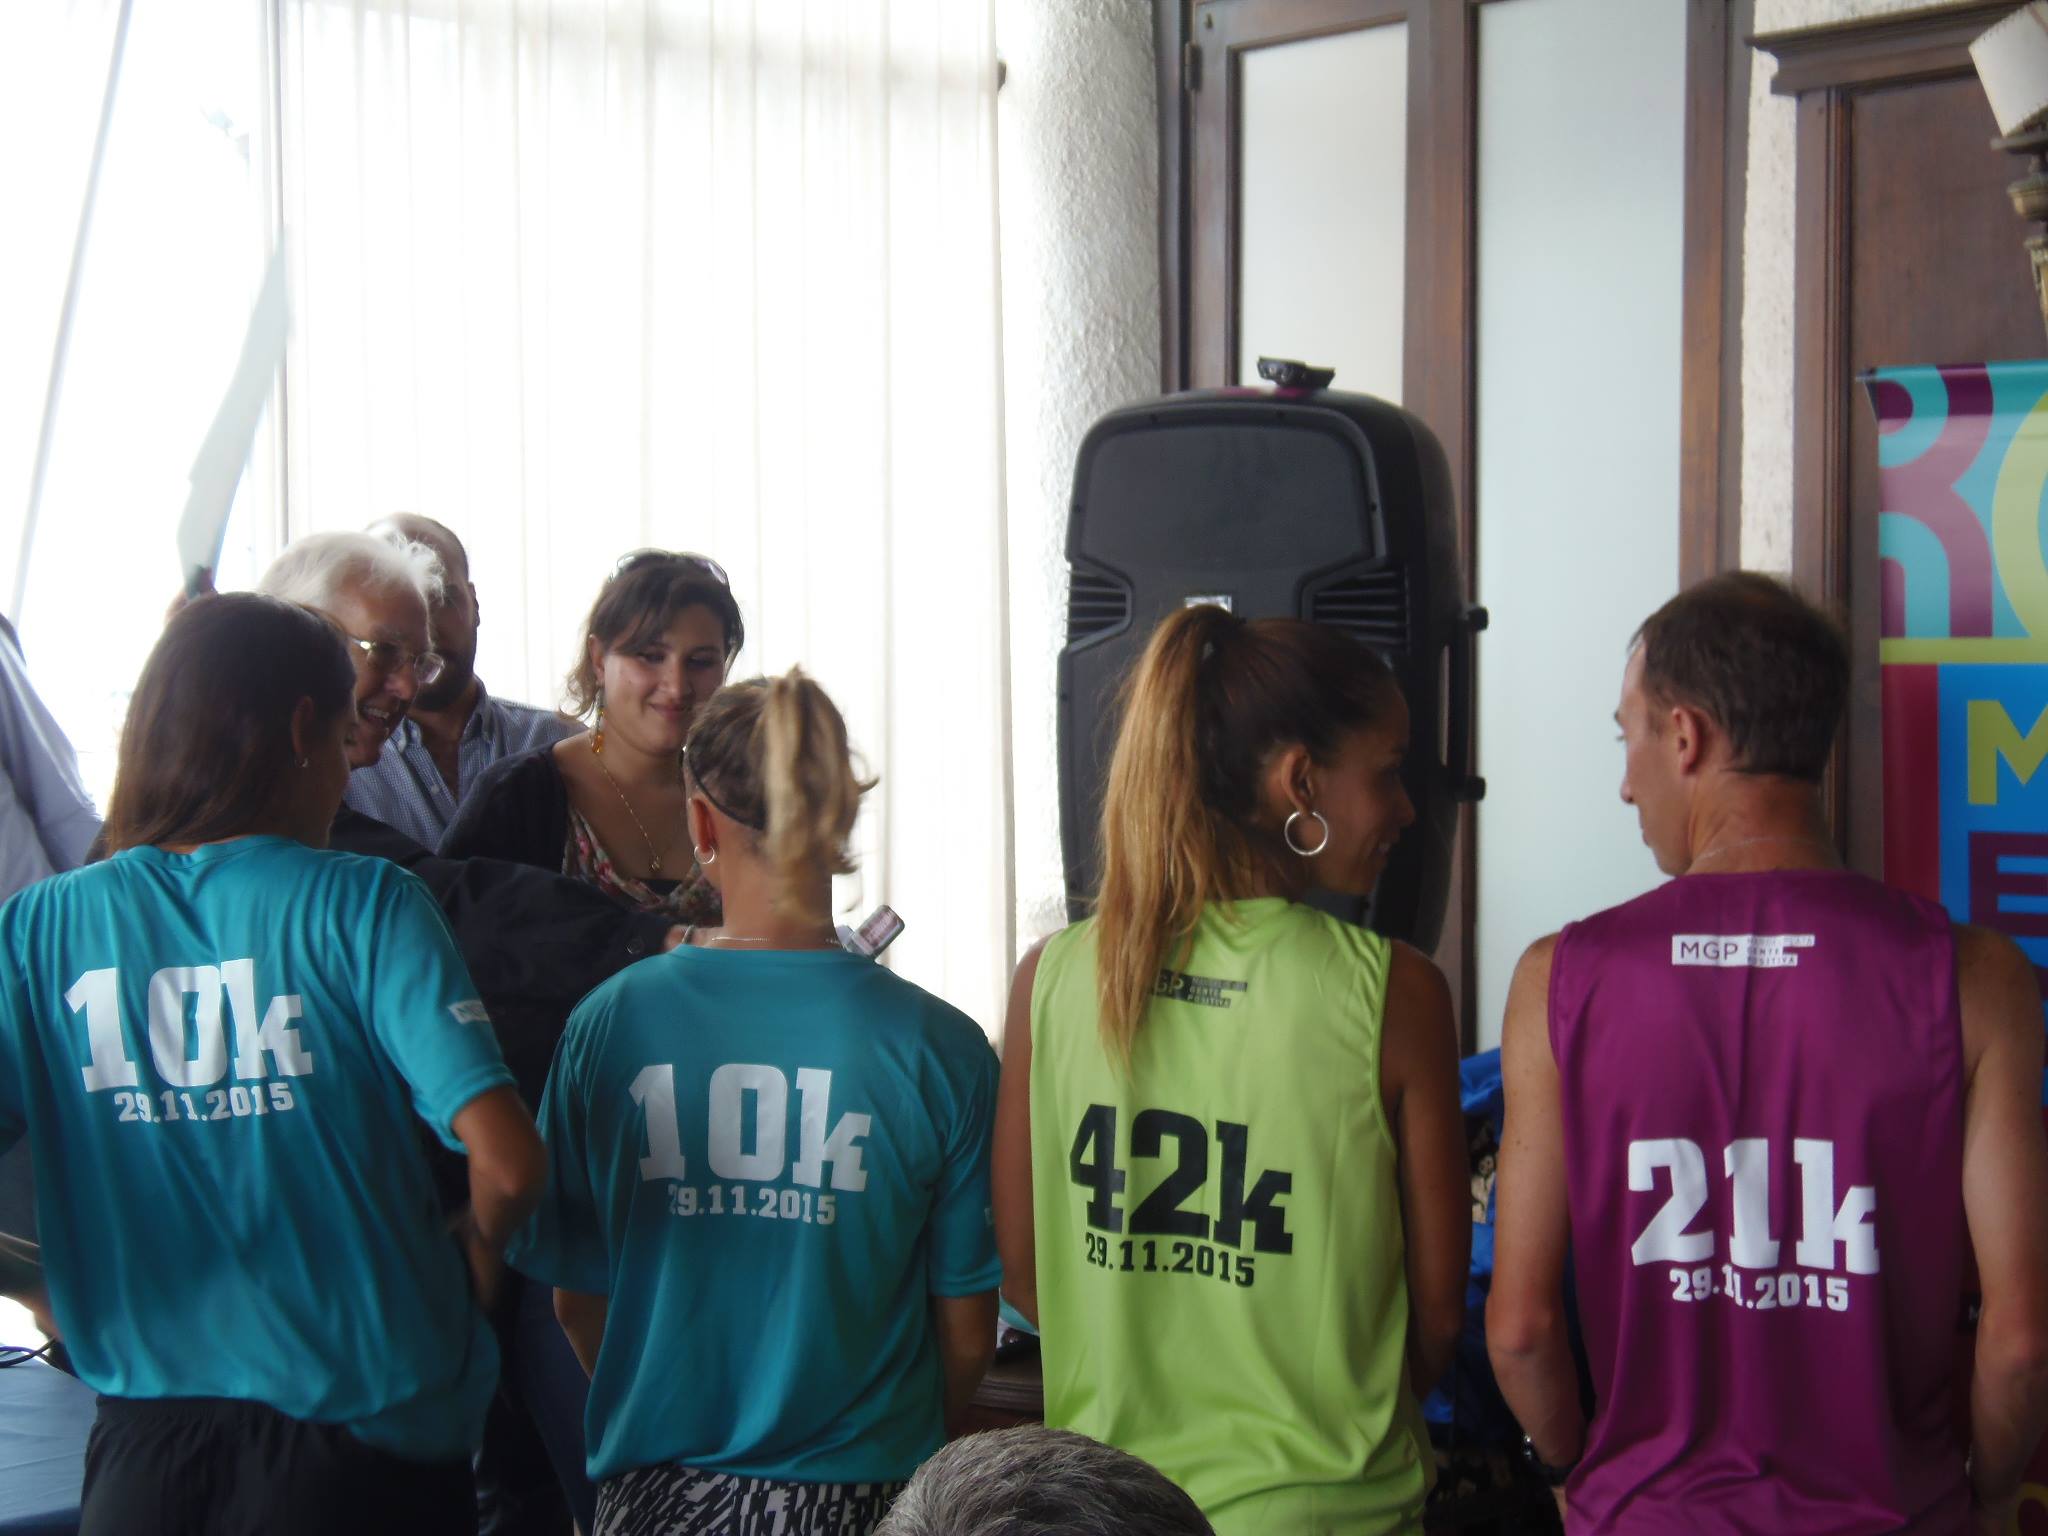 Maraton de Mar del plata 2015 remera fecha inscripciones resultados fotos locos por correr 02